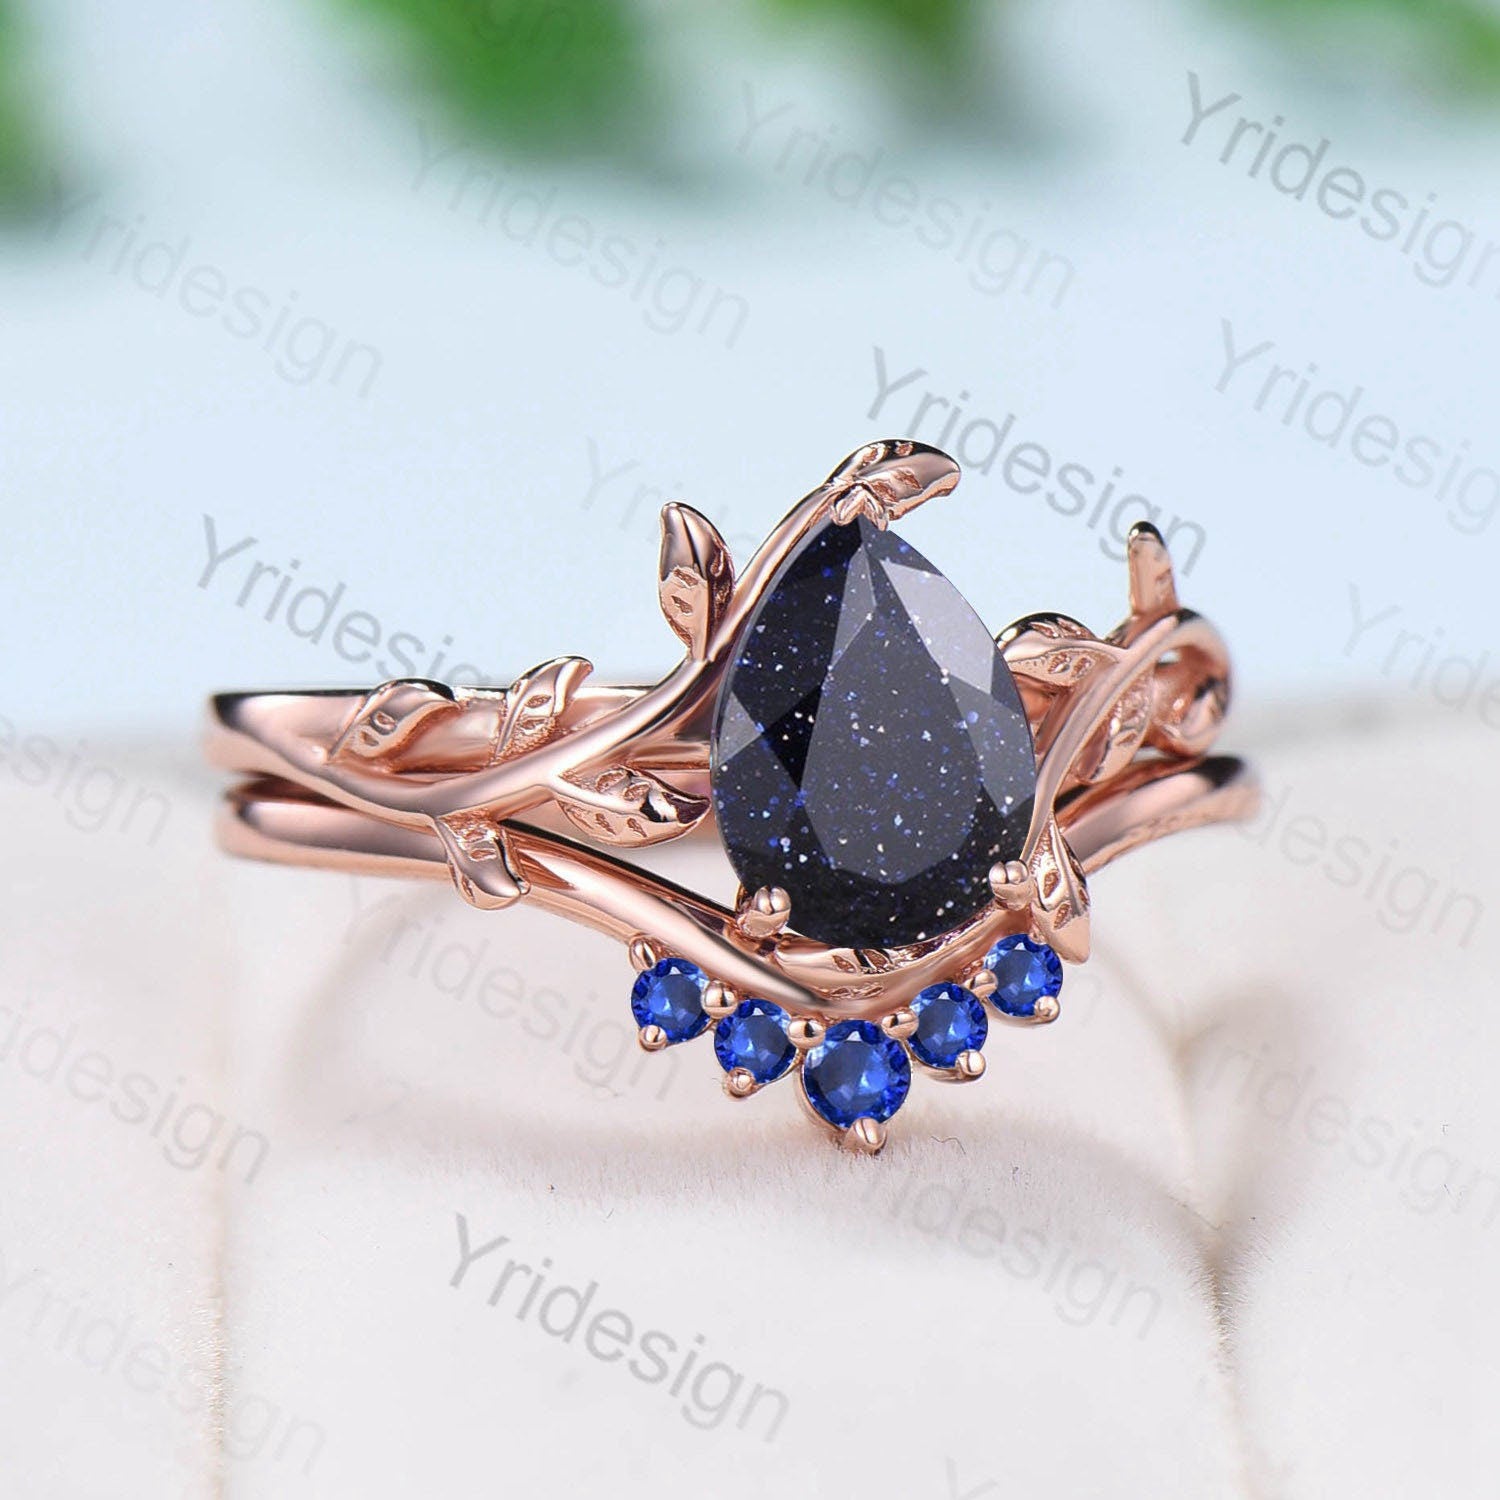 Nature Inspired Pear Shaped Blue Sandstone Engagement Rings Set  Leaf Wedding Ring Set Vintage Blue Goldstone Promise Ring Proposal Gifts - PENFINE